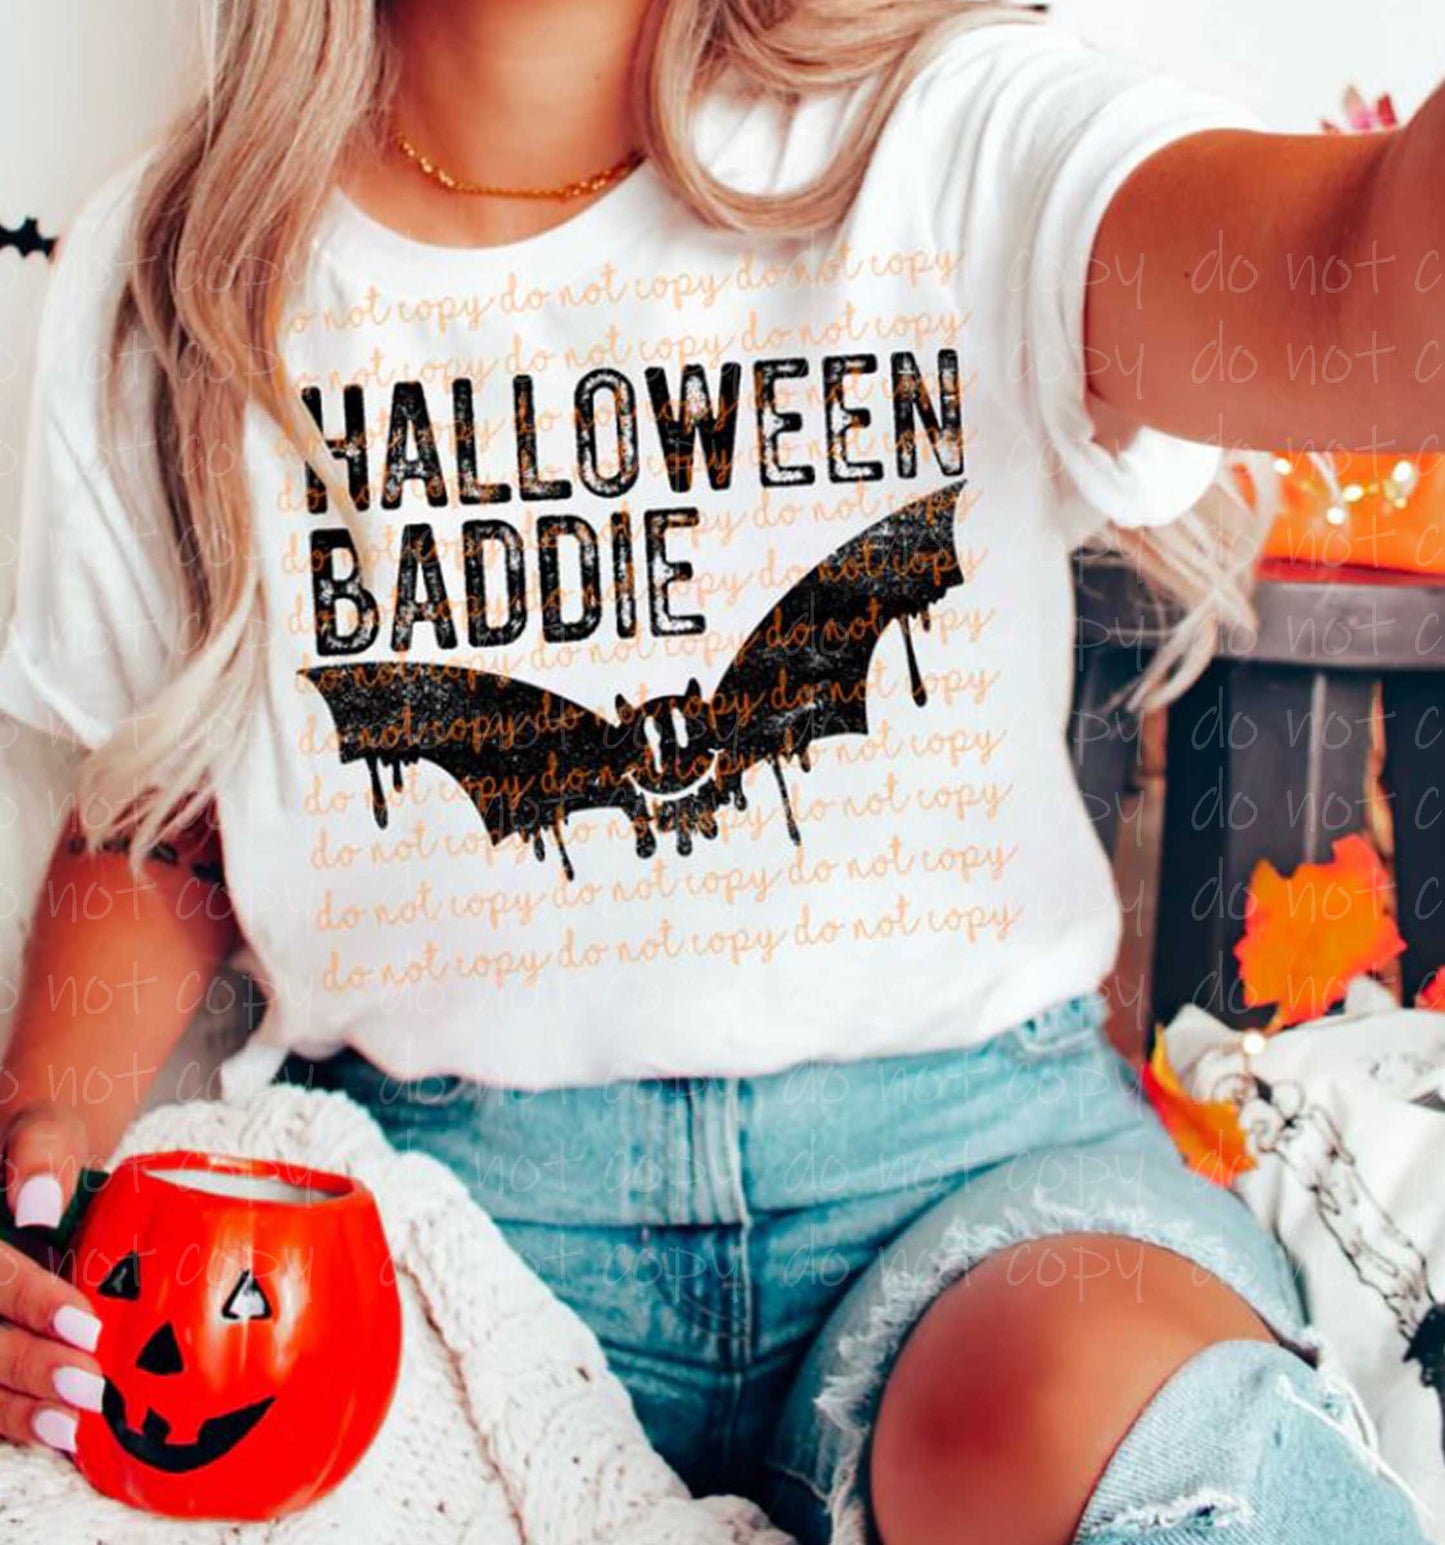 Halloween Baddie LOW HEAT SCREEN PRINT #1